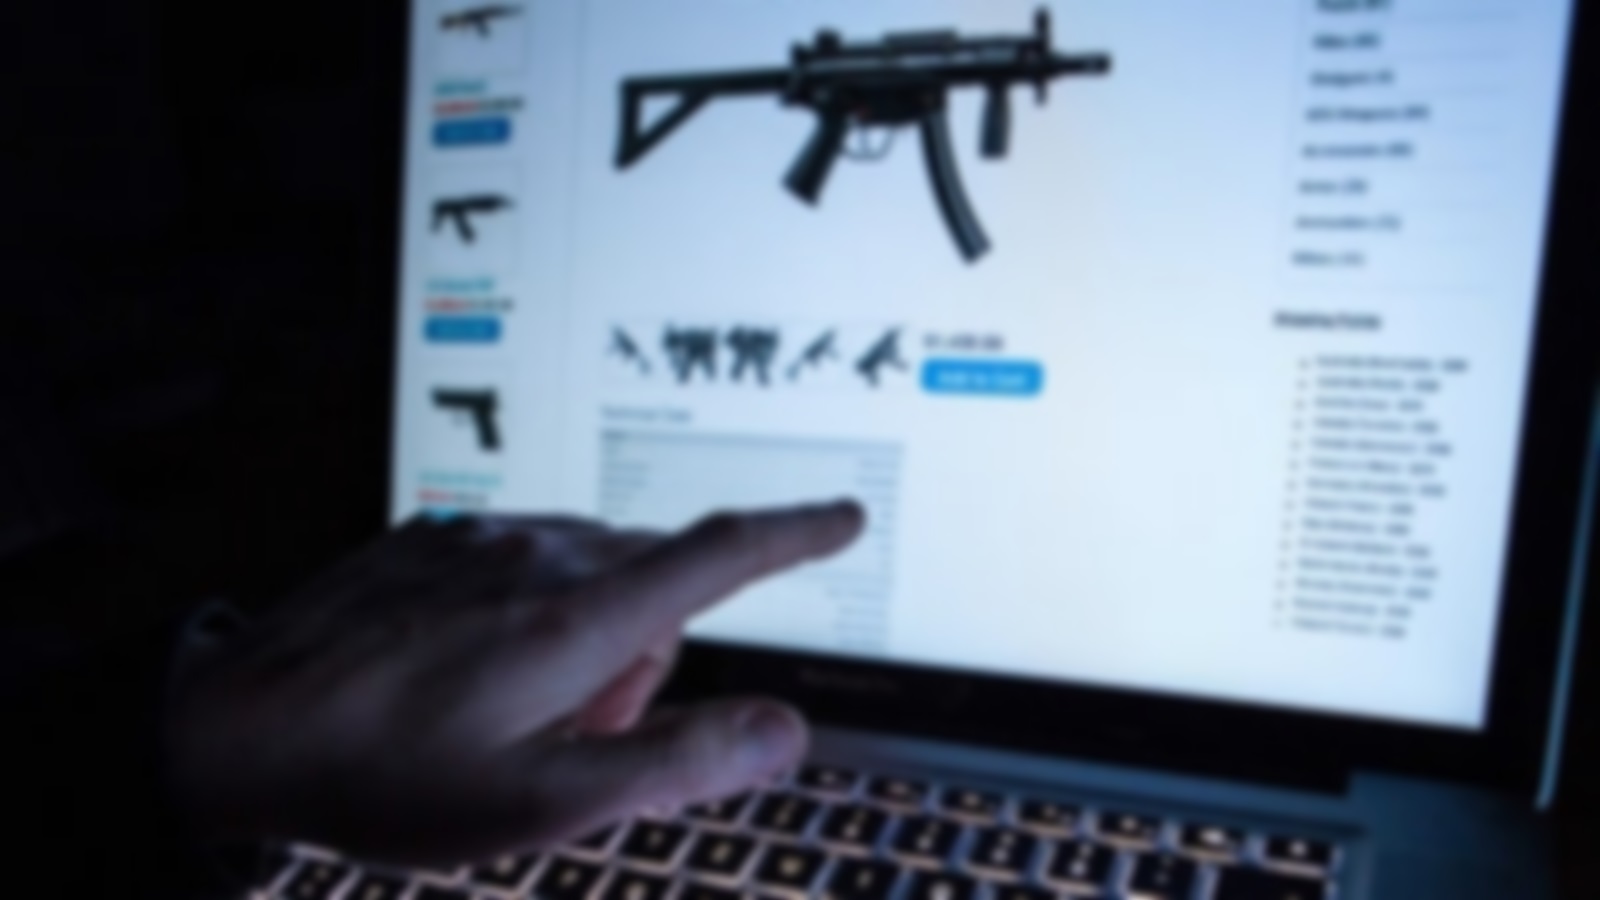 پلیس فتا: بررسی ۱۲۰۰ سایت و شبکه در موضوع اسلحه/ تشکیل ۱۰ پرونده در مورد فروش سوالات کنکور ۹۸